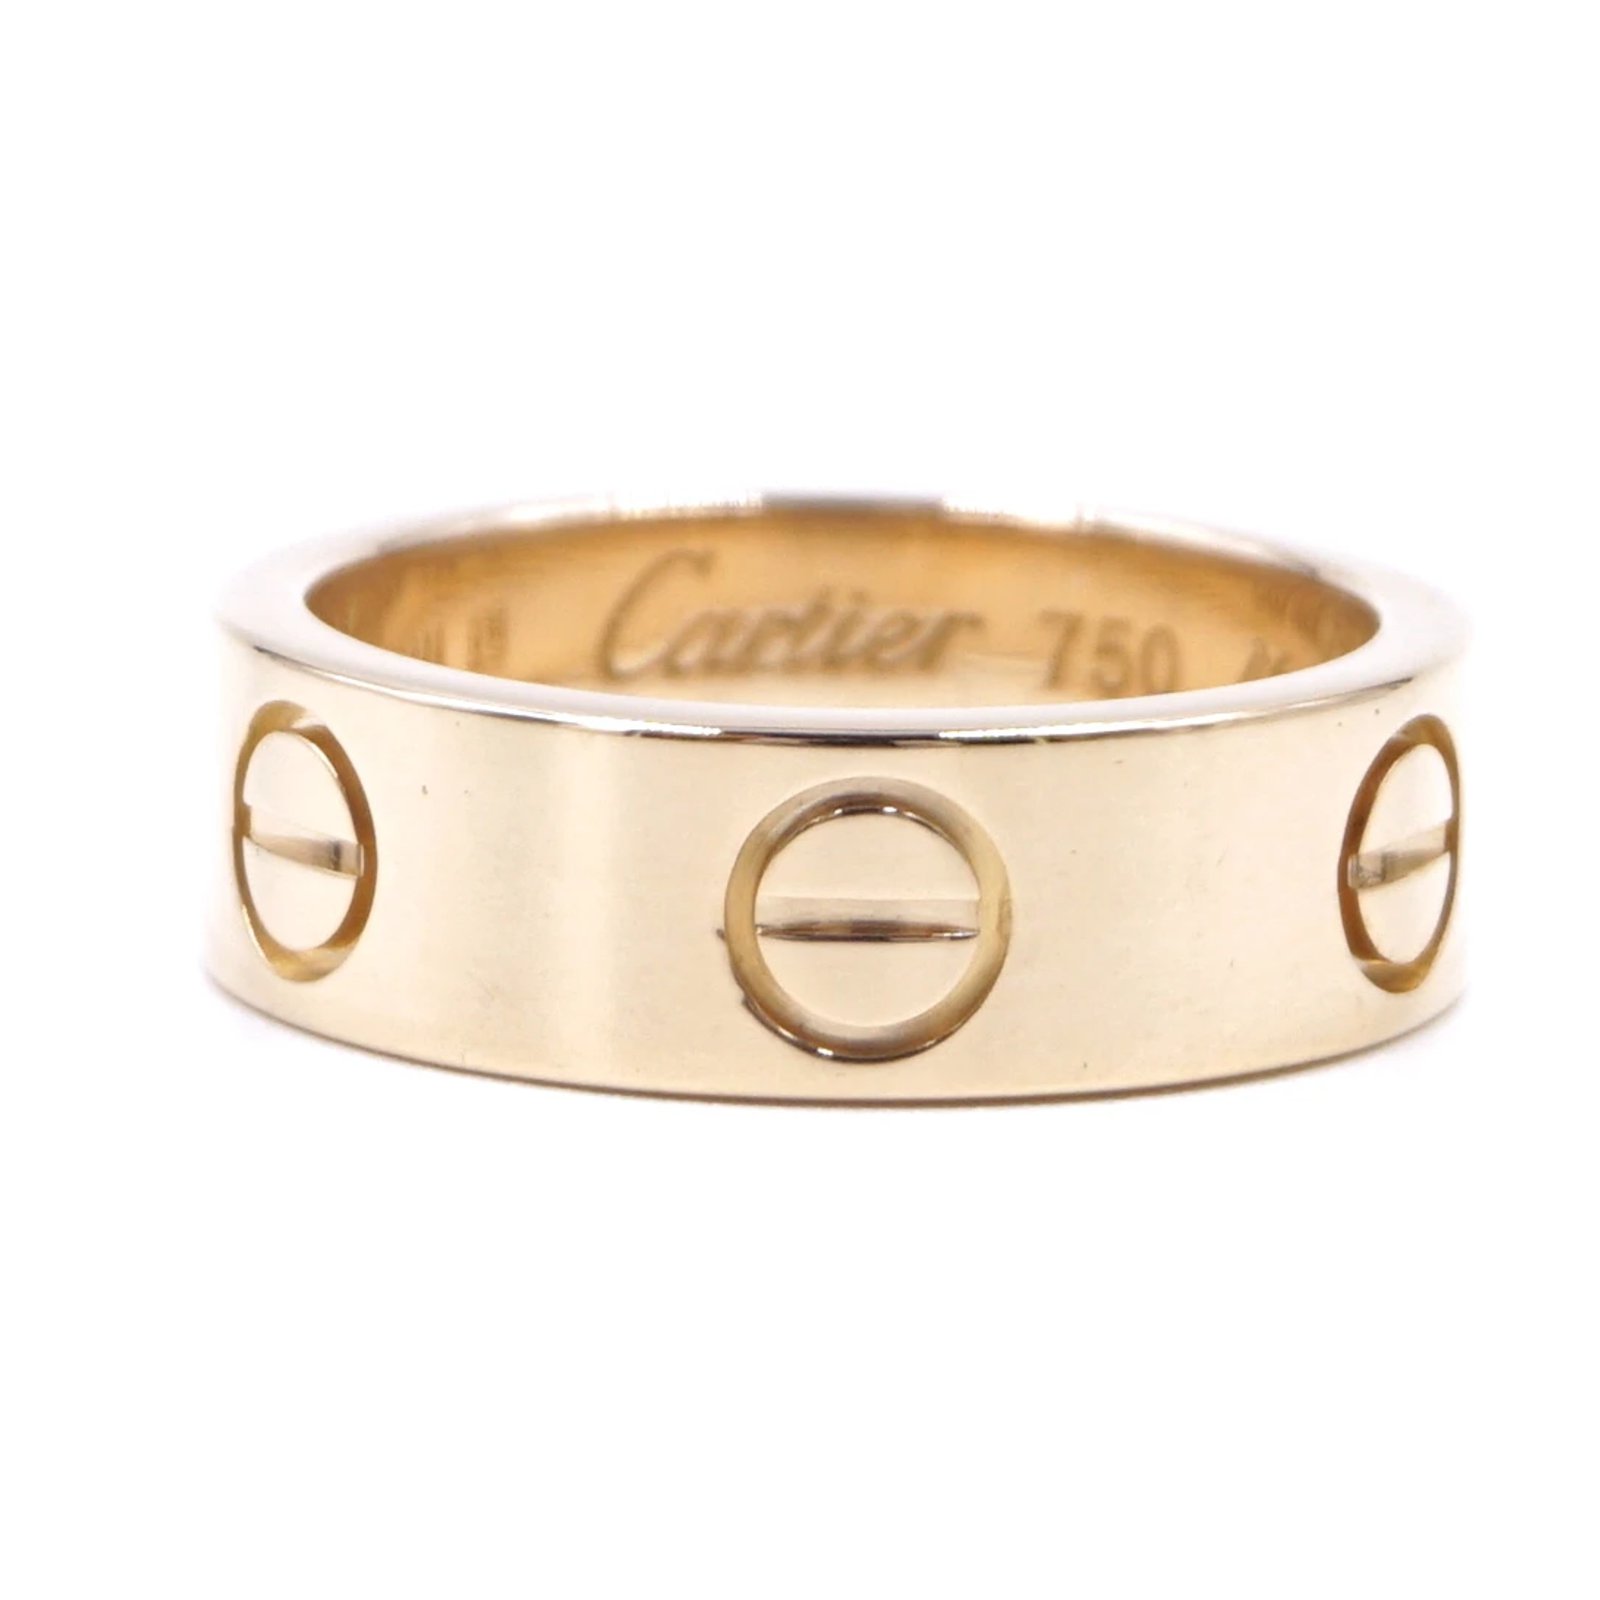 Cartier cartier 18K 750 Love Band Ring 